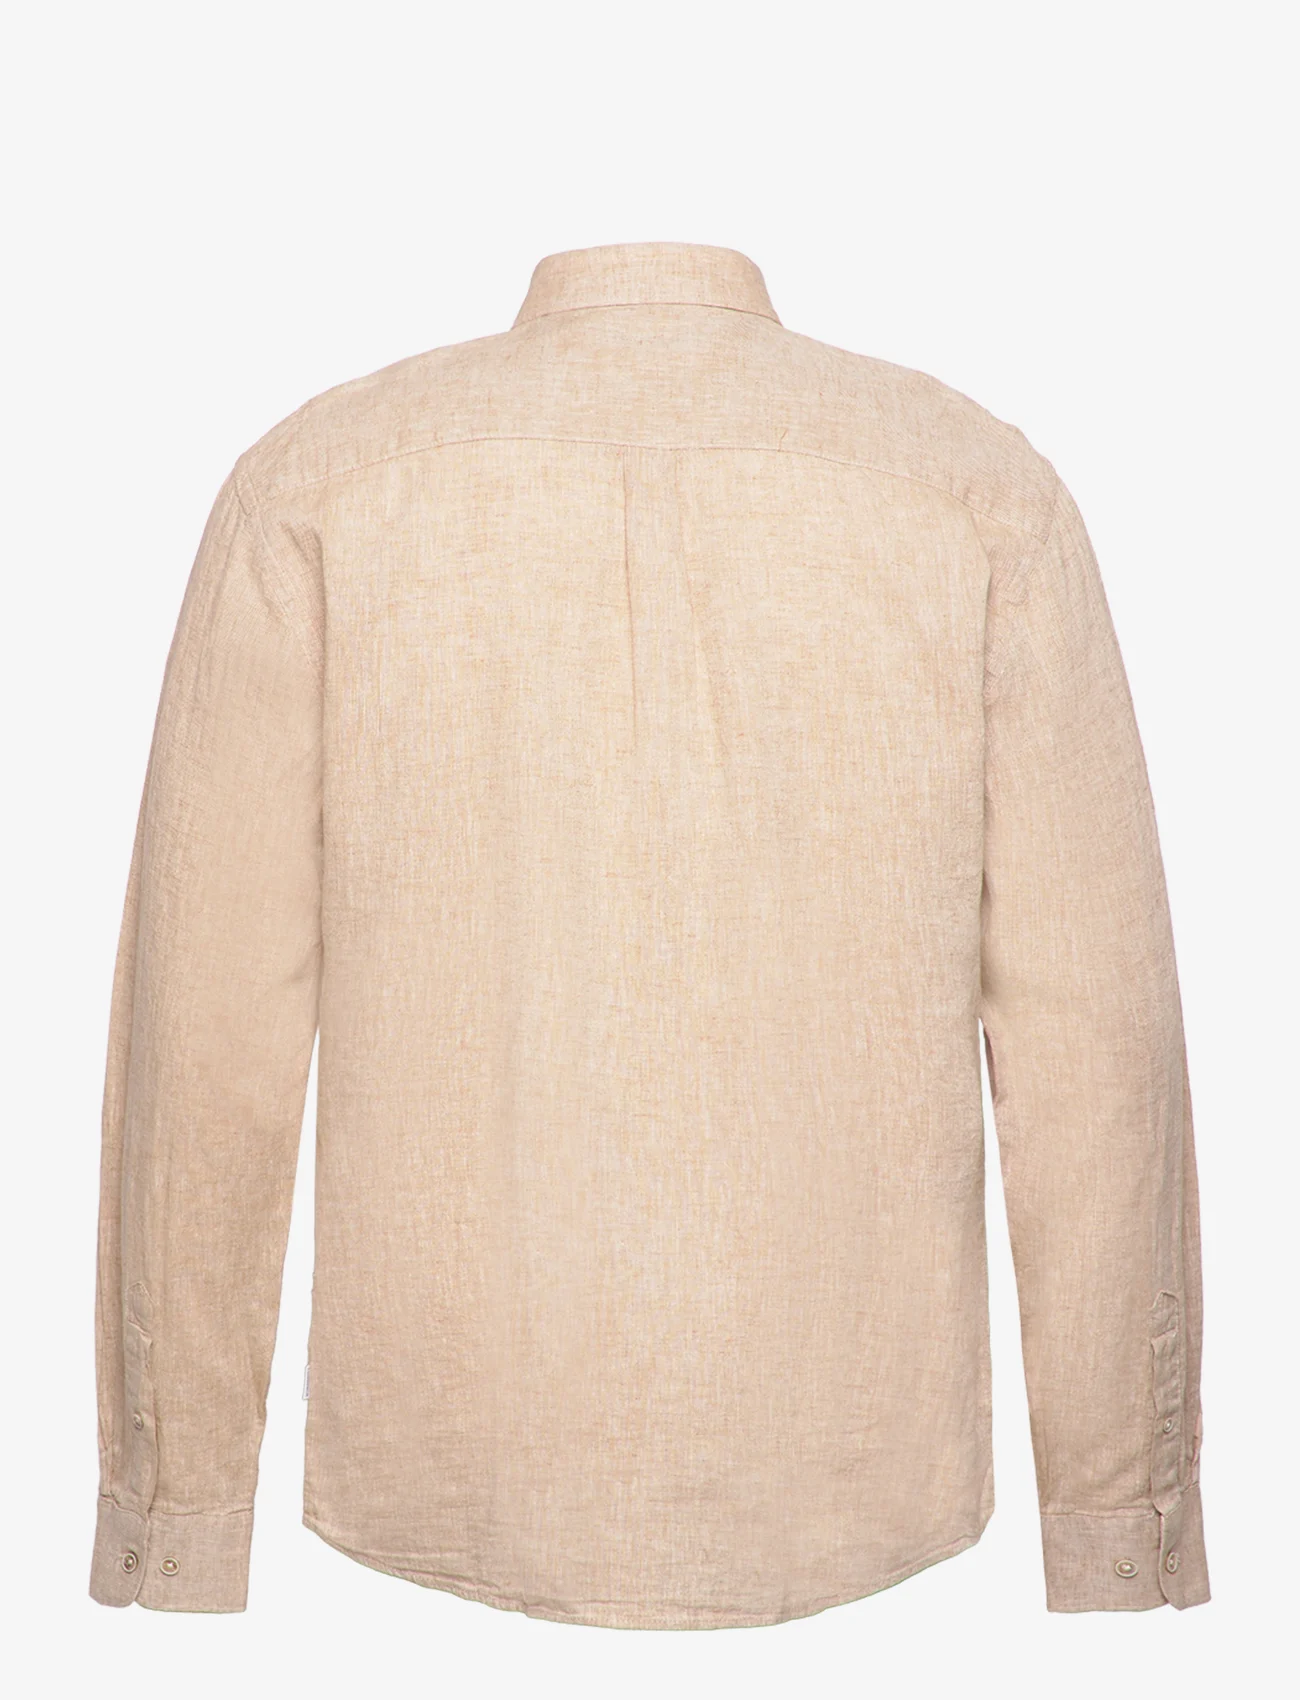 Lindbergh - Cotton/linen shirt L/S - leinenhemden - mid sand - 1